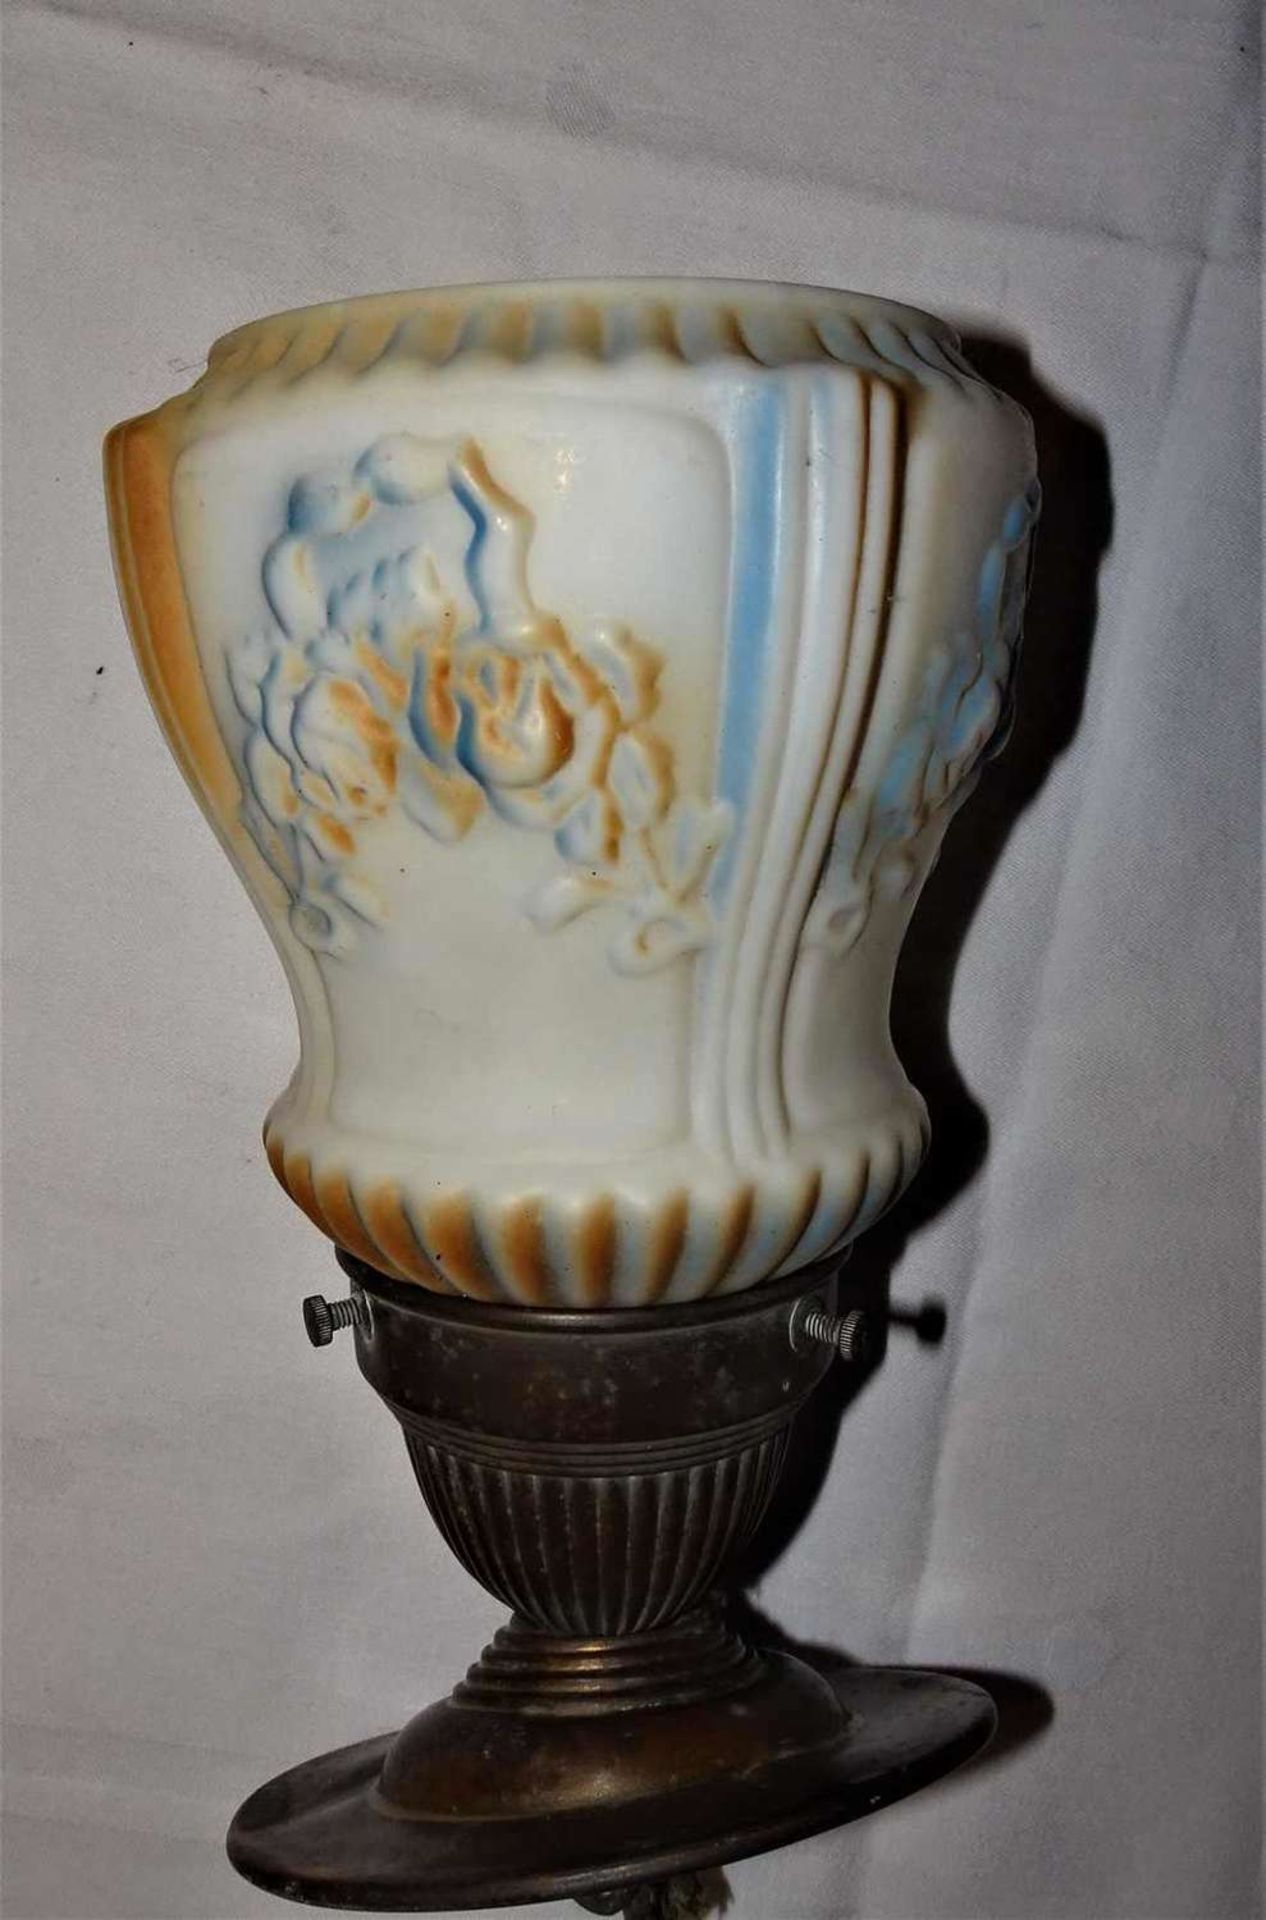 kleine Art Deco Deckenlampe, Opalin Milchglas Spritzdekor. Gesamtlänge ca. 20 cmsmall Art Deco cei